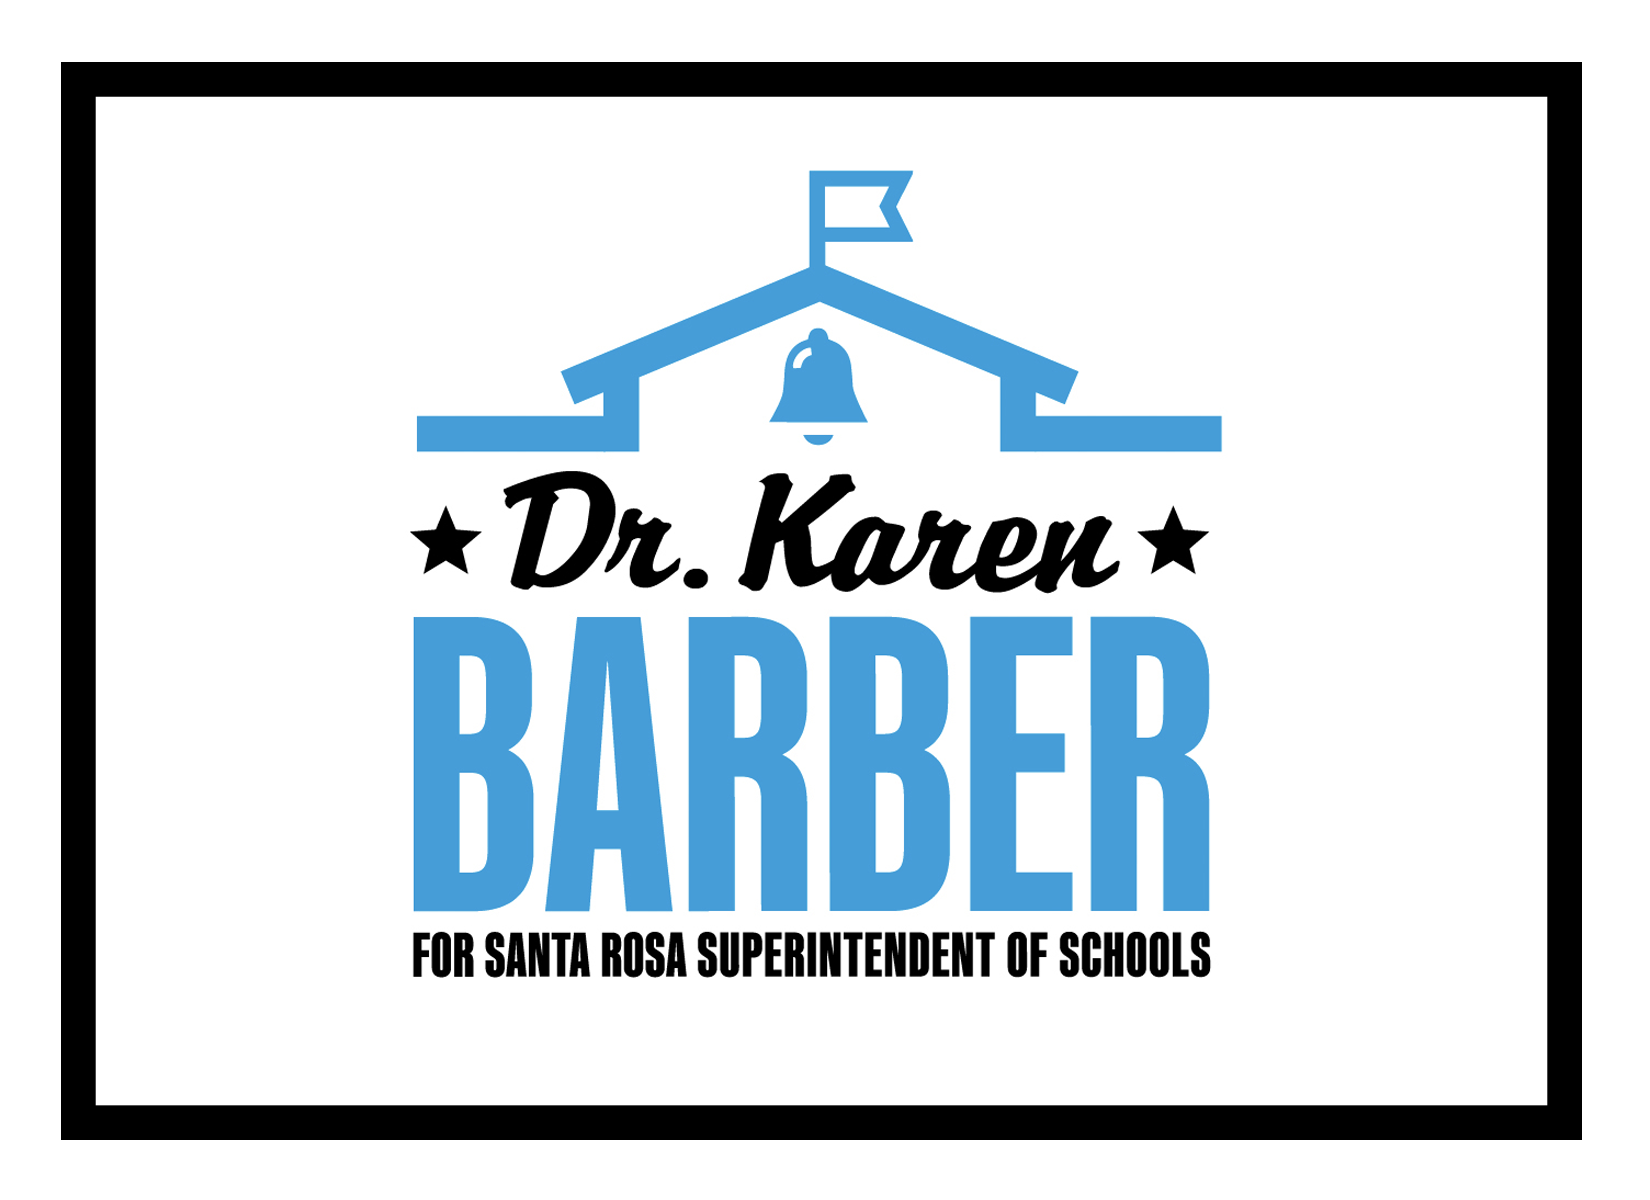 Candidacy of Dr. Karen Barber logo